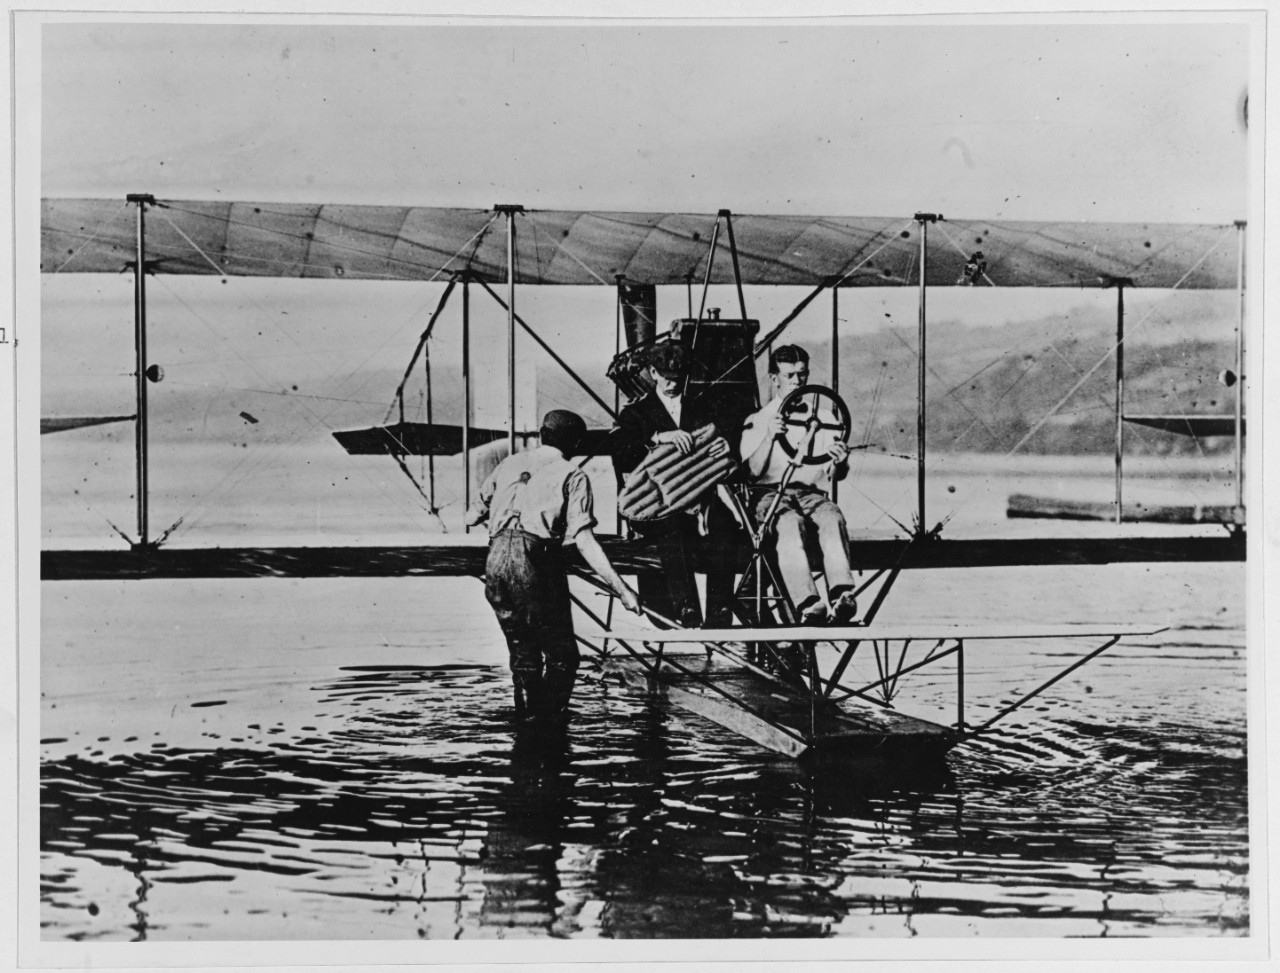 Early aviation